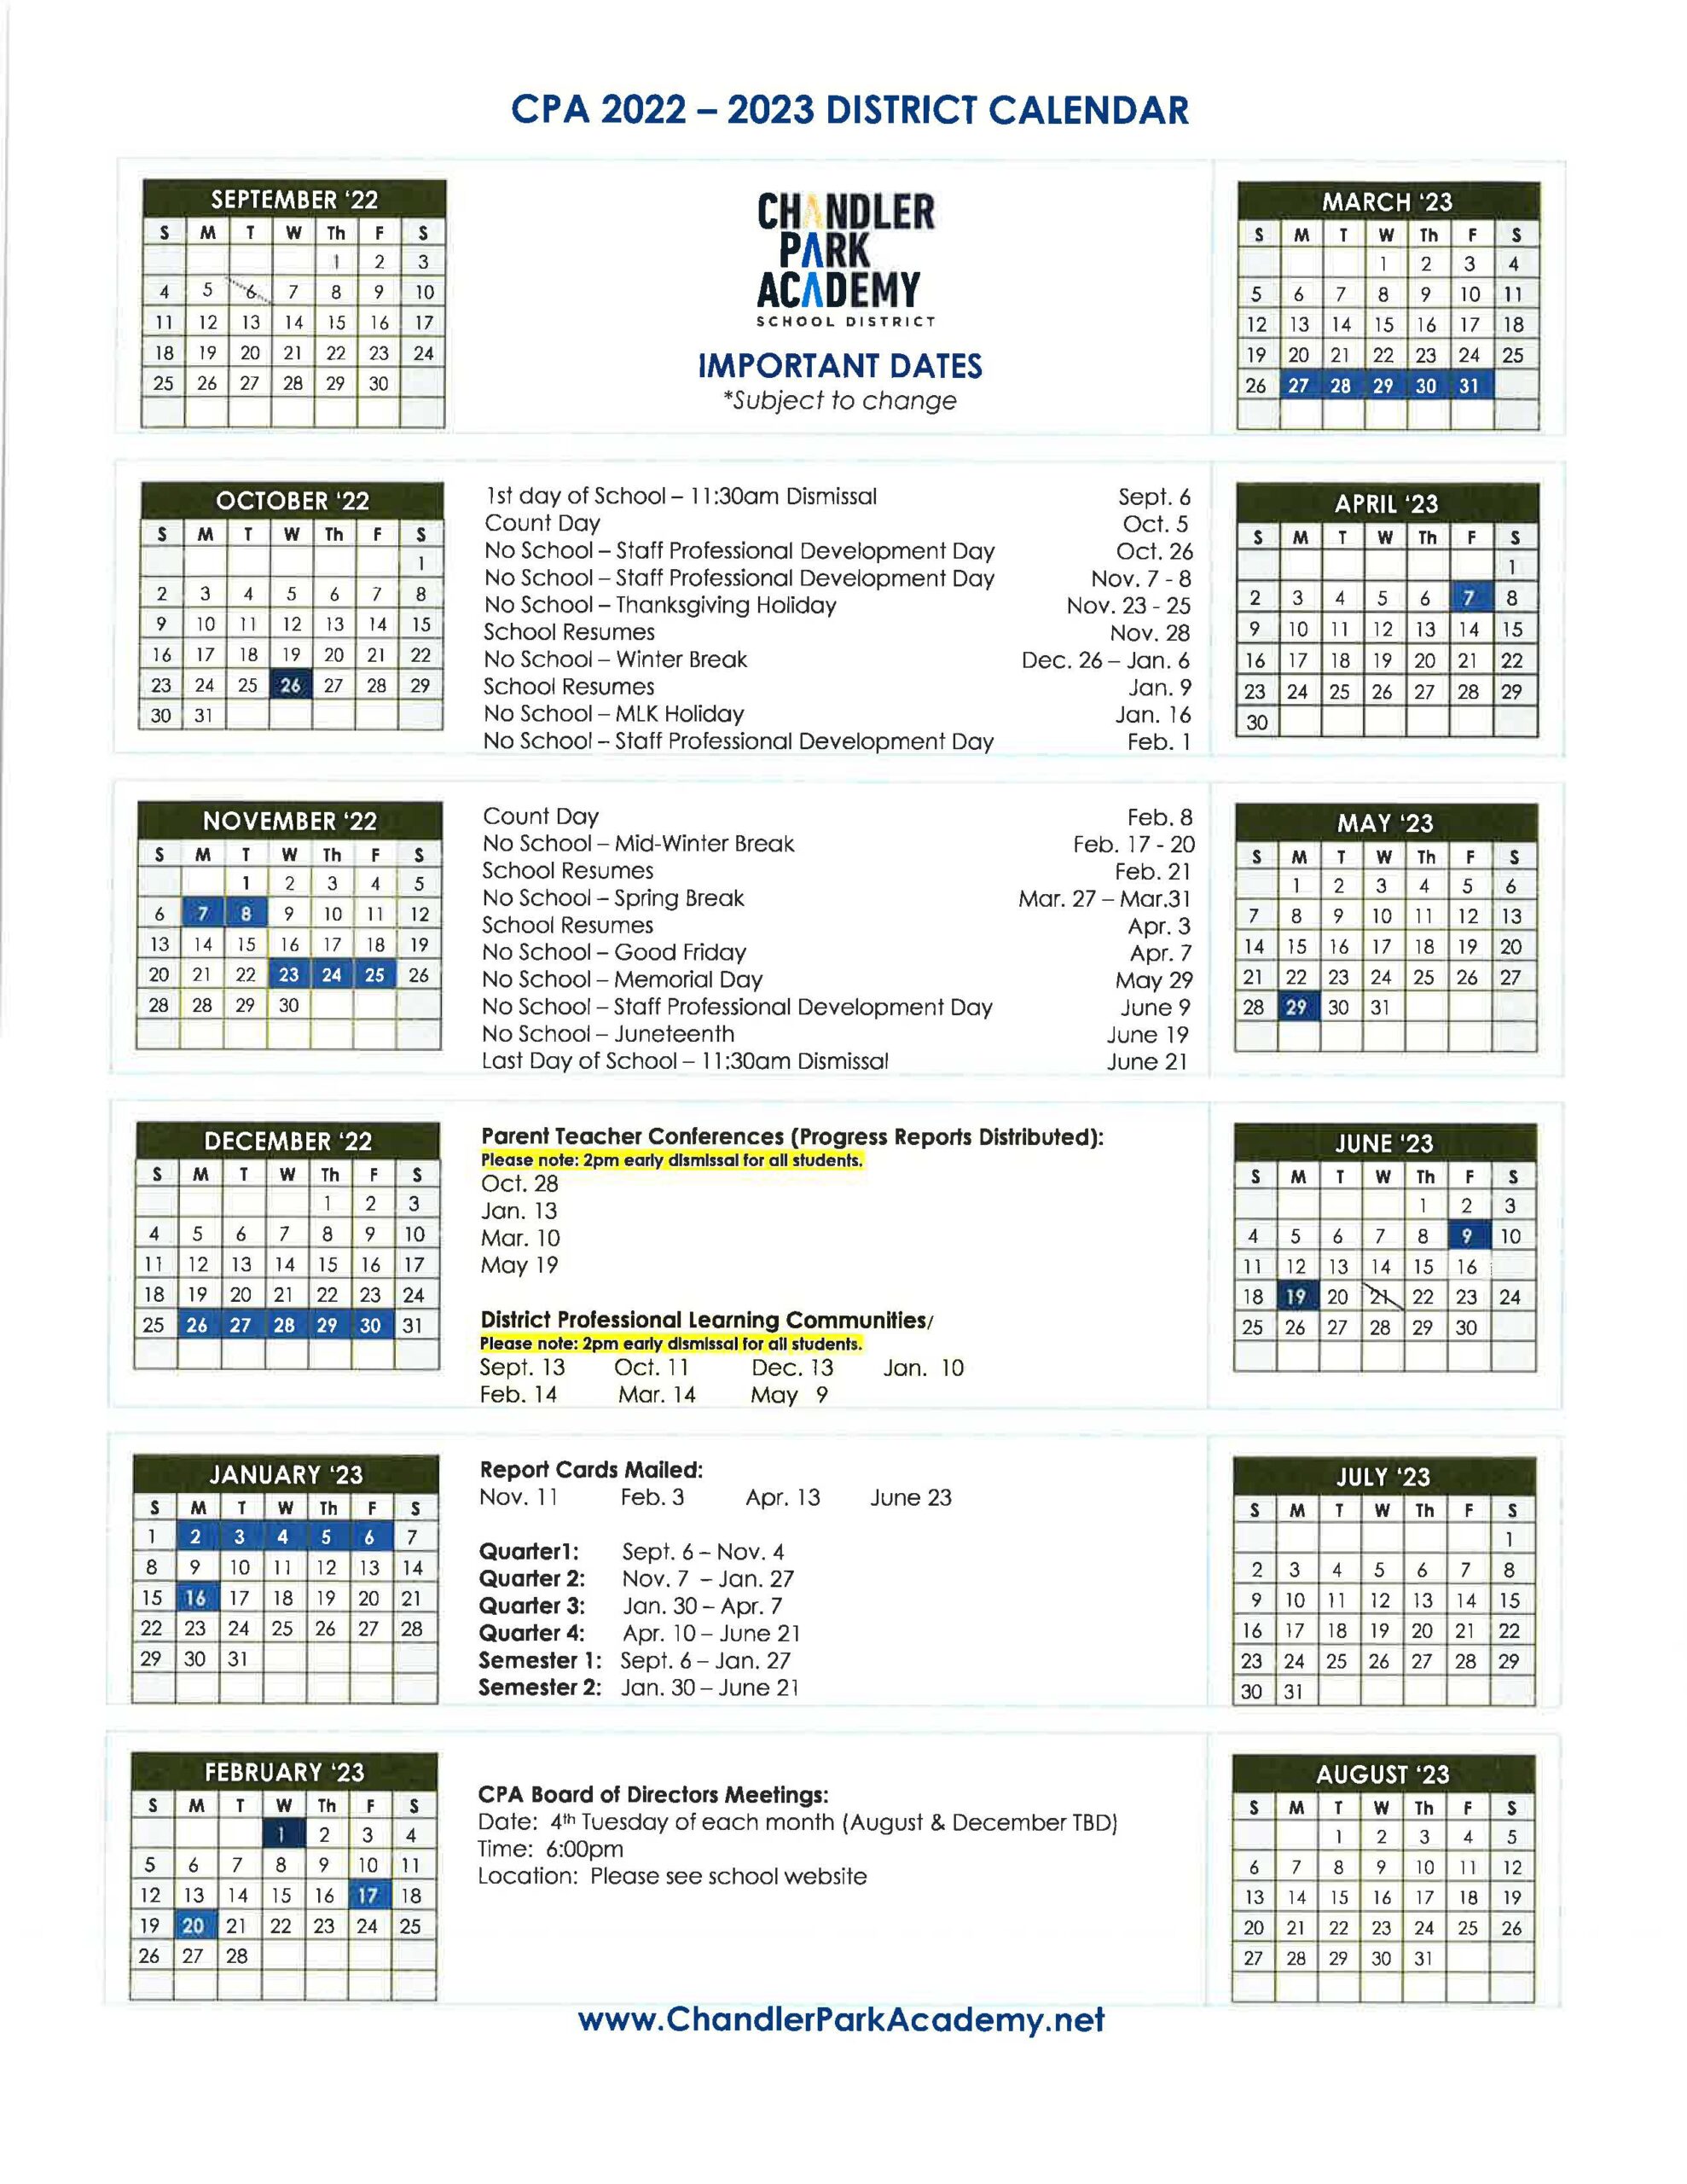 District Calendars Chandler Park Academy District